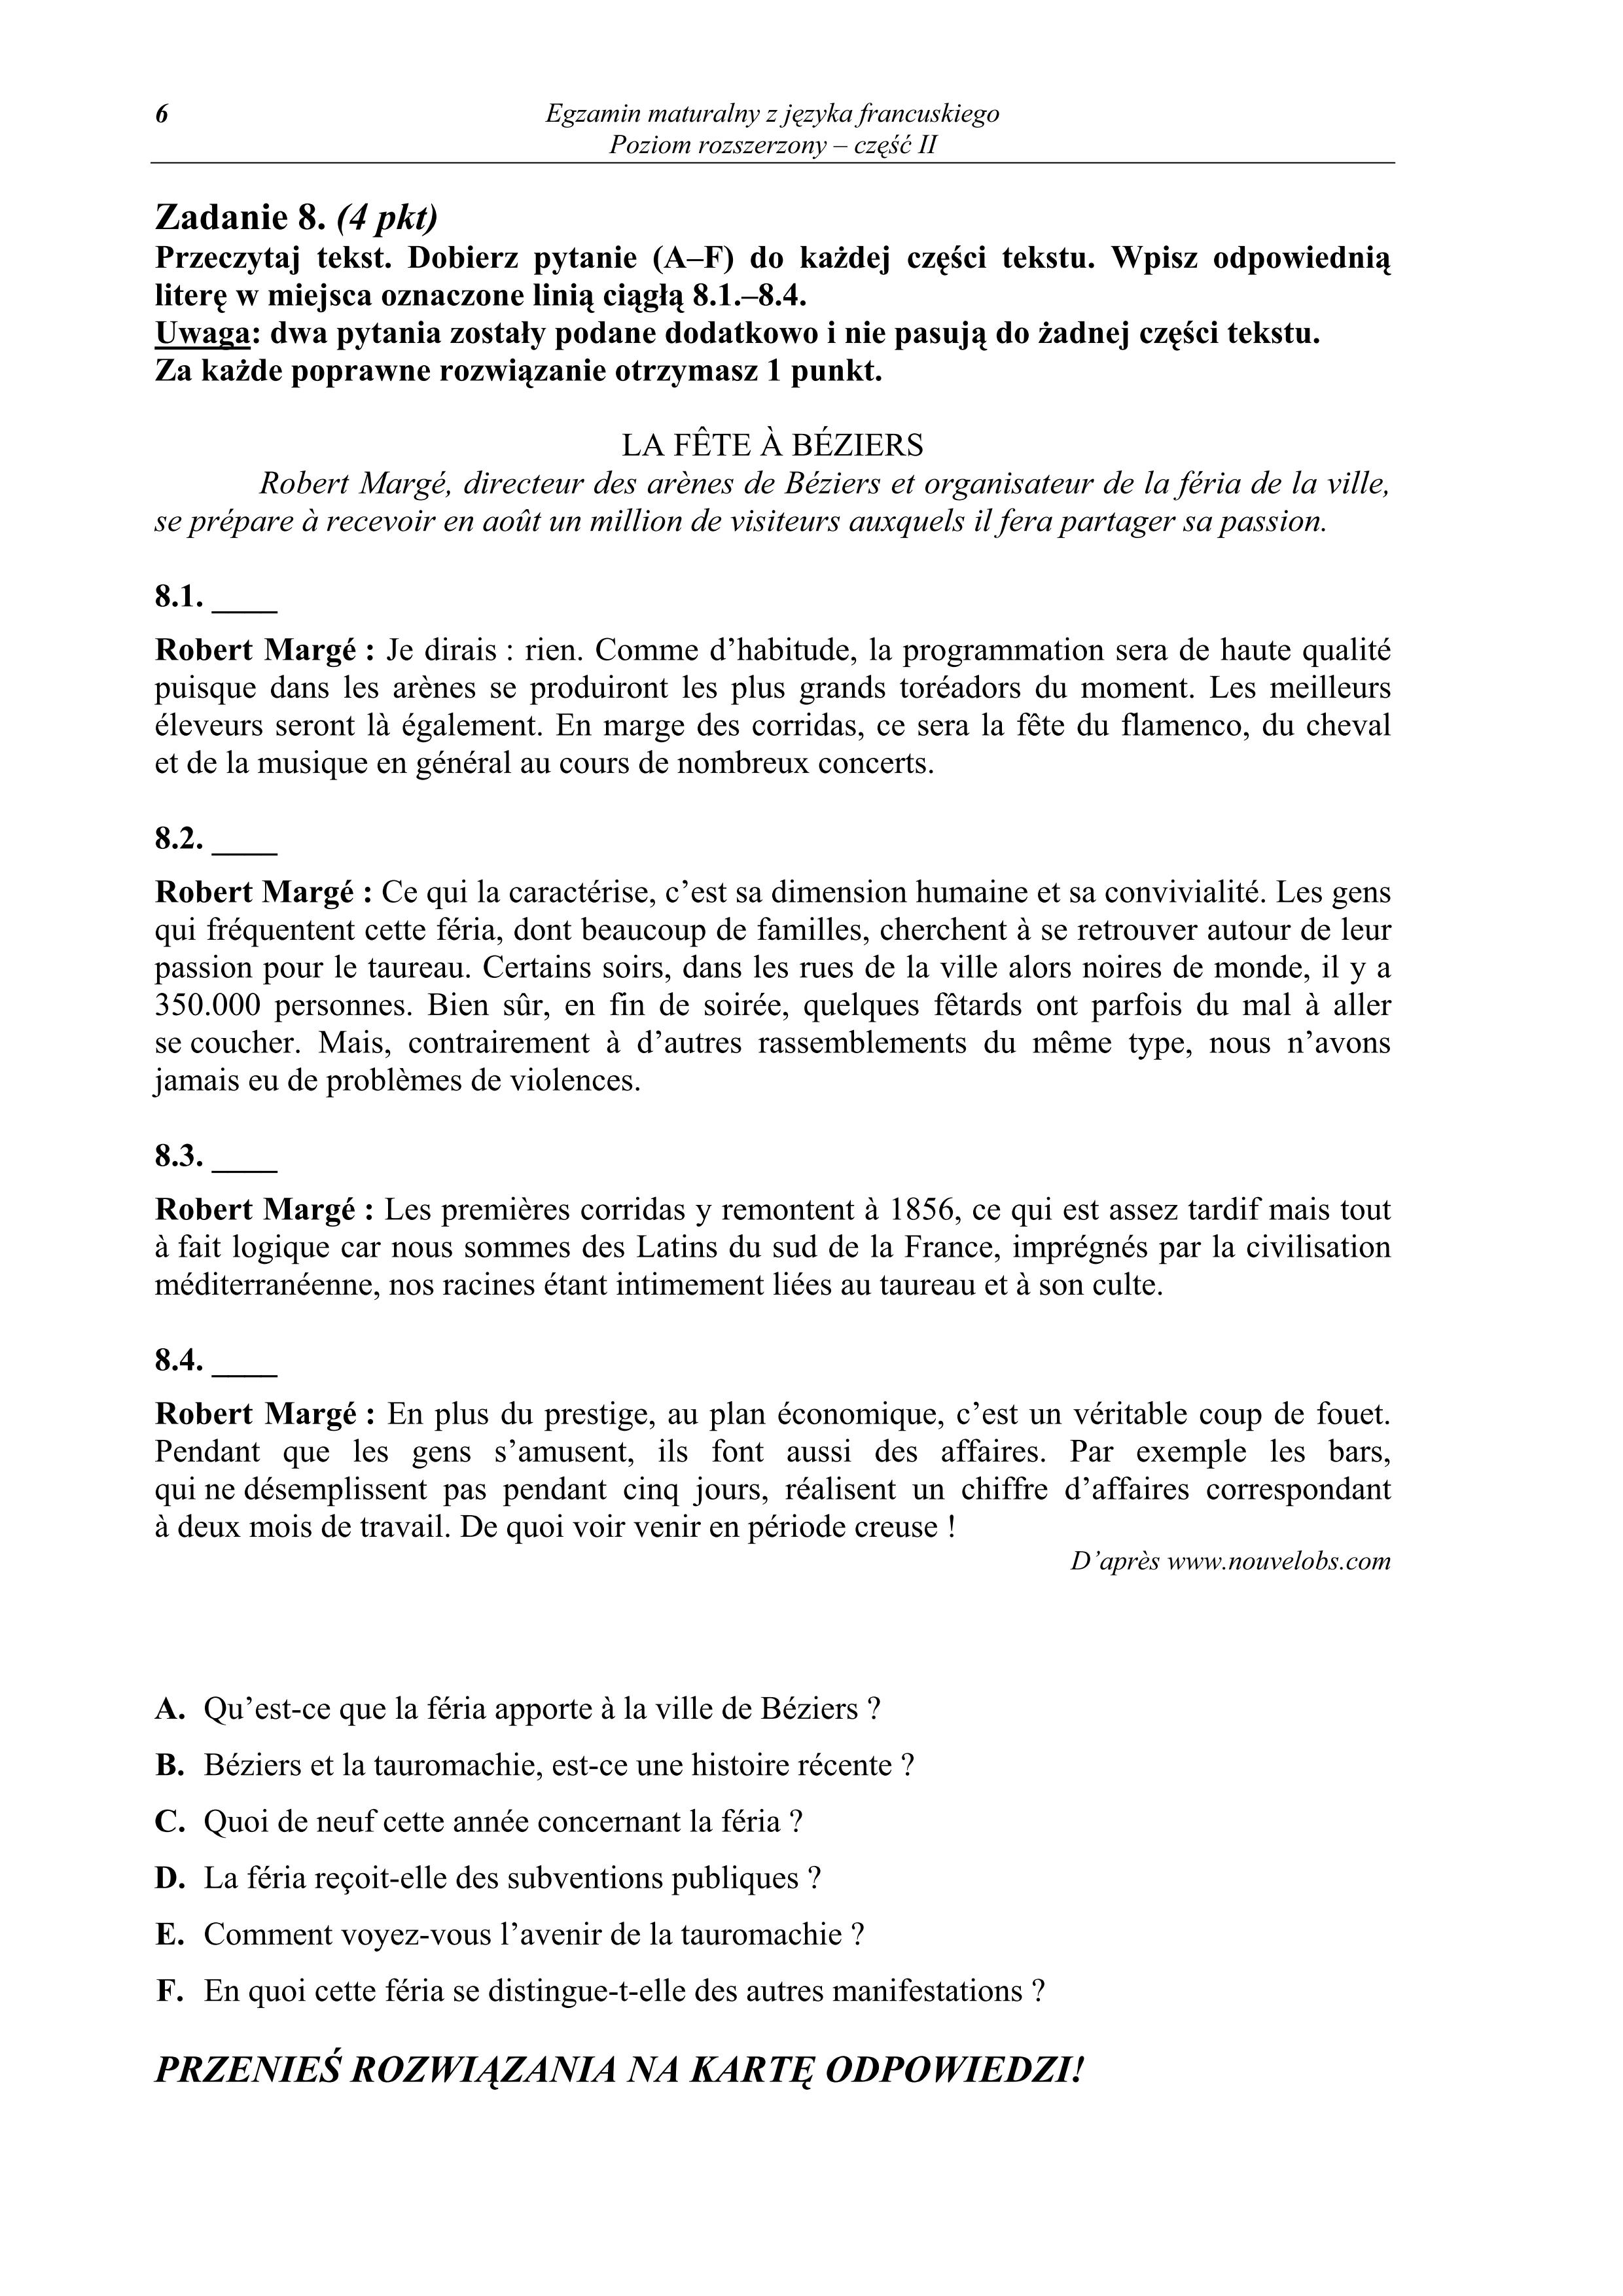 pytania-jezyk-francuski-poziom-rozszerzony-matura-2011-cz2 - 6